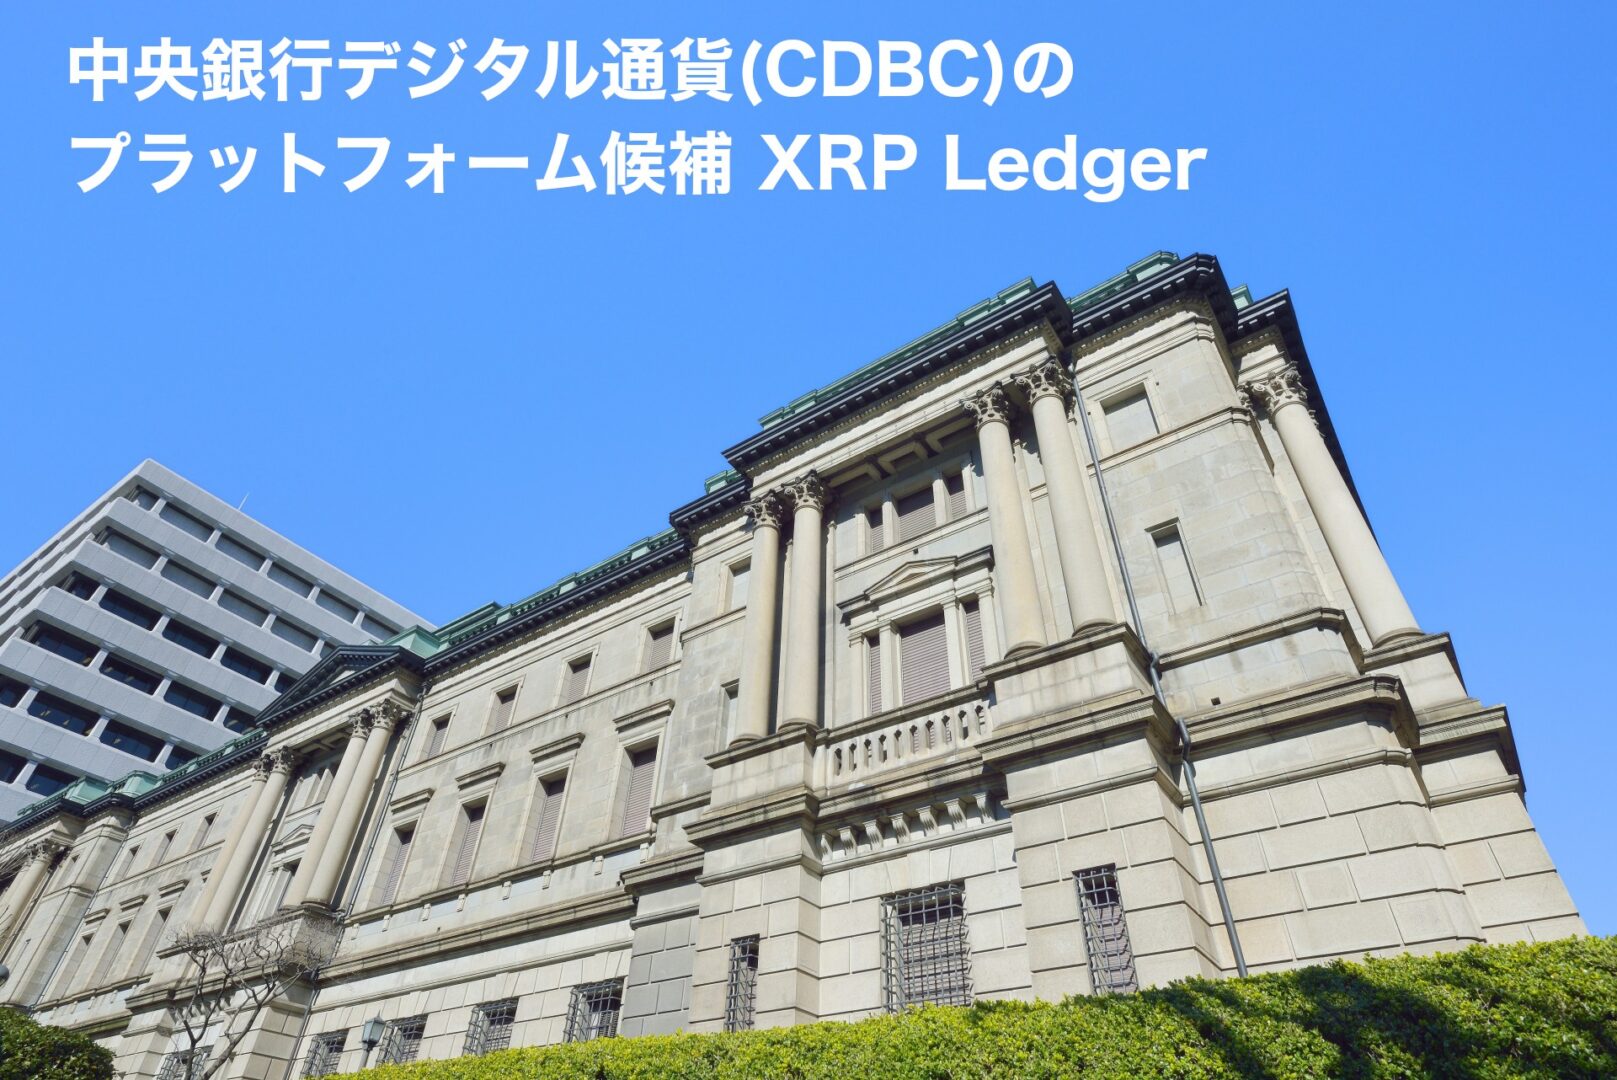 中央銀行デジタル通貨(CDBC)のプラットフォーム候補XRPLedger